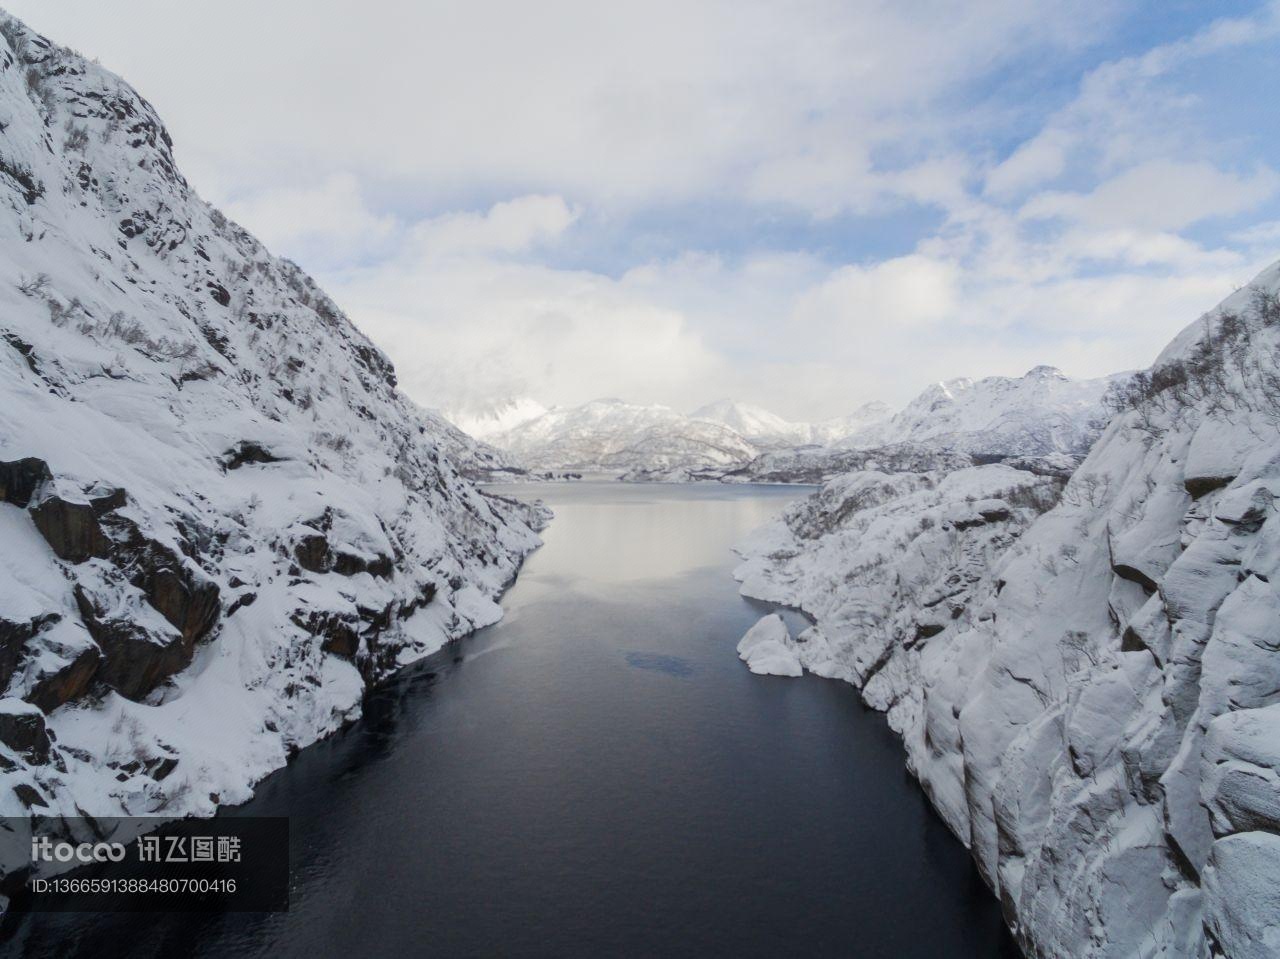 挪威,冰雪,自然风景